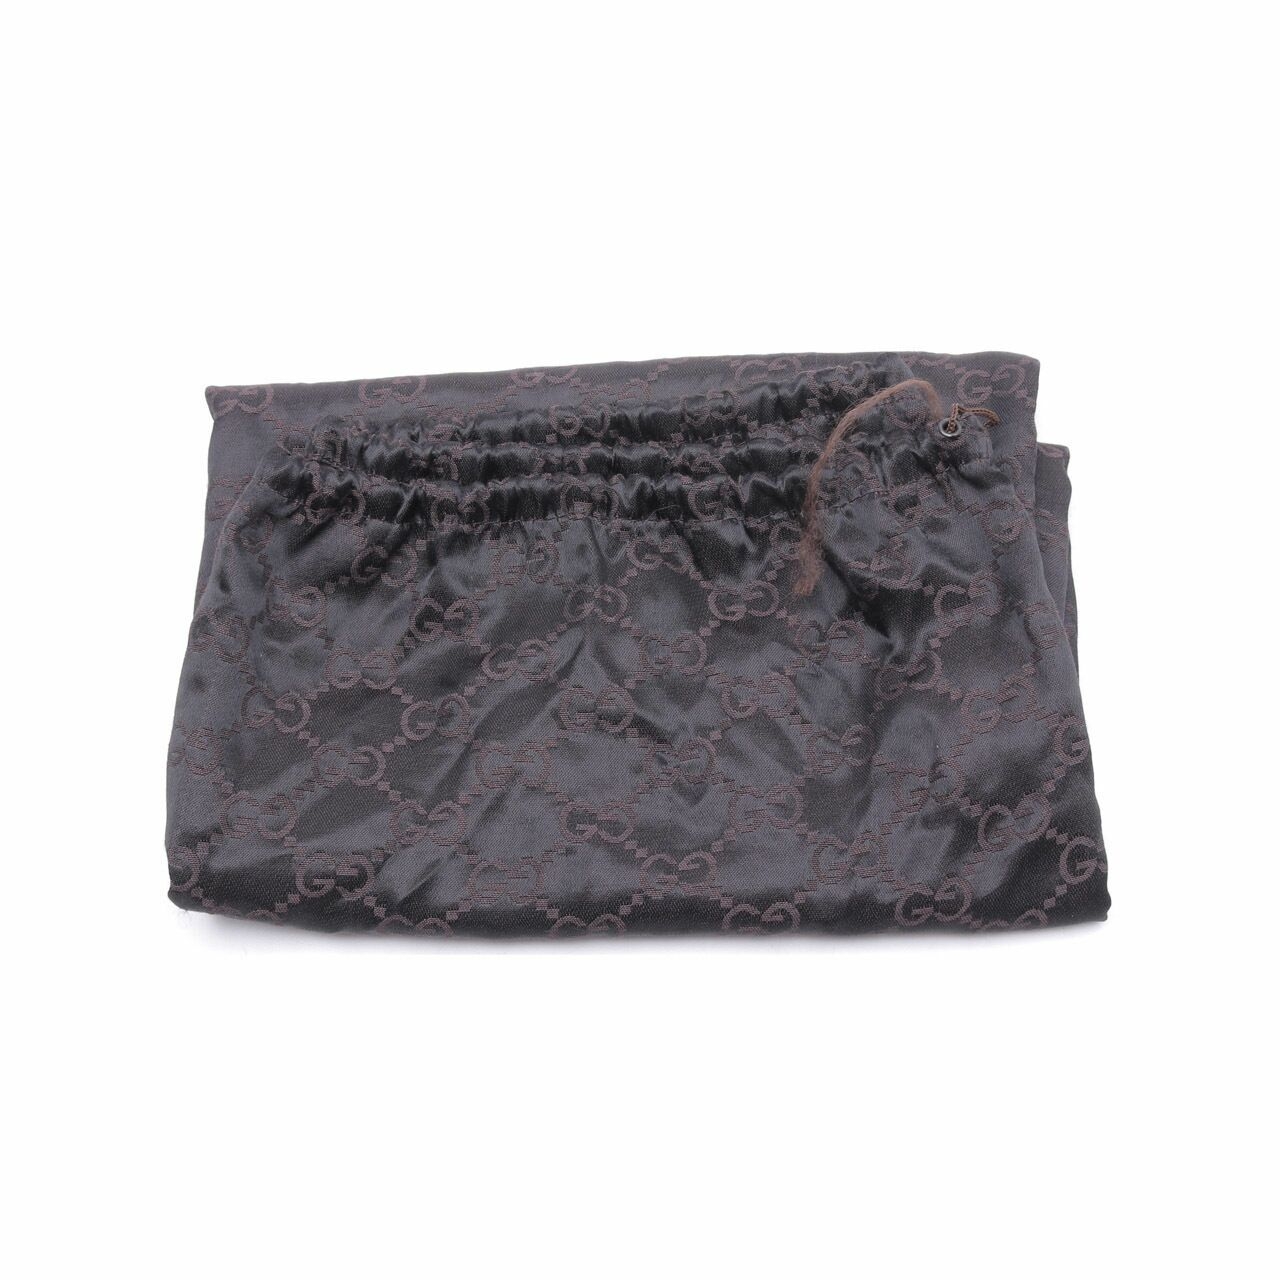 Gucci Monogram GG Web Large Buckle Beige Canvas Hobo Shoulder Bag